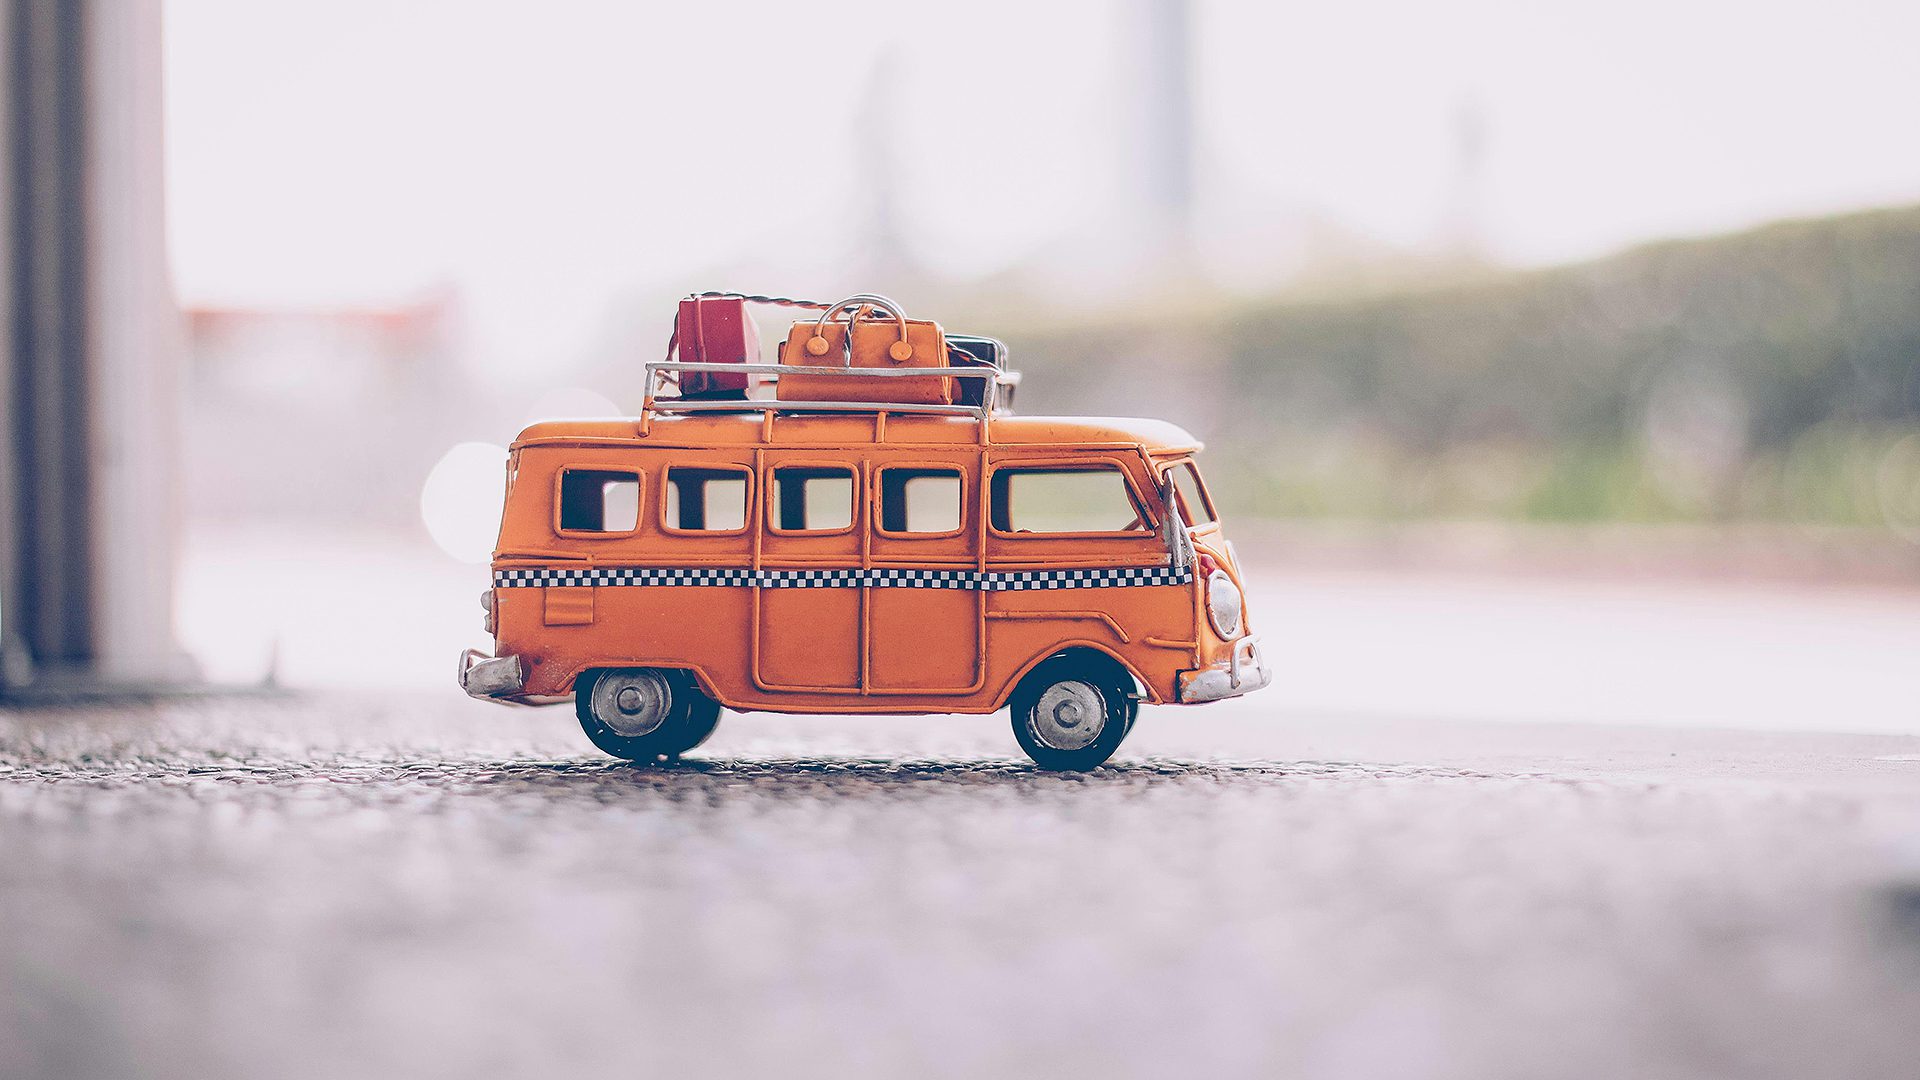 pieni oranssin värinen leikkibussi, jonka katolla matkalaukkuja ja tavaroita